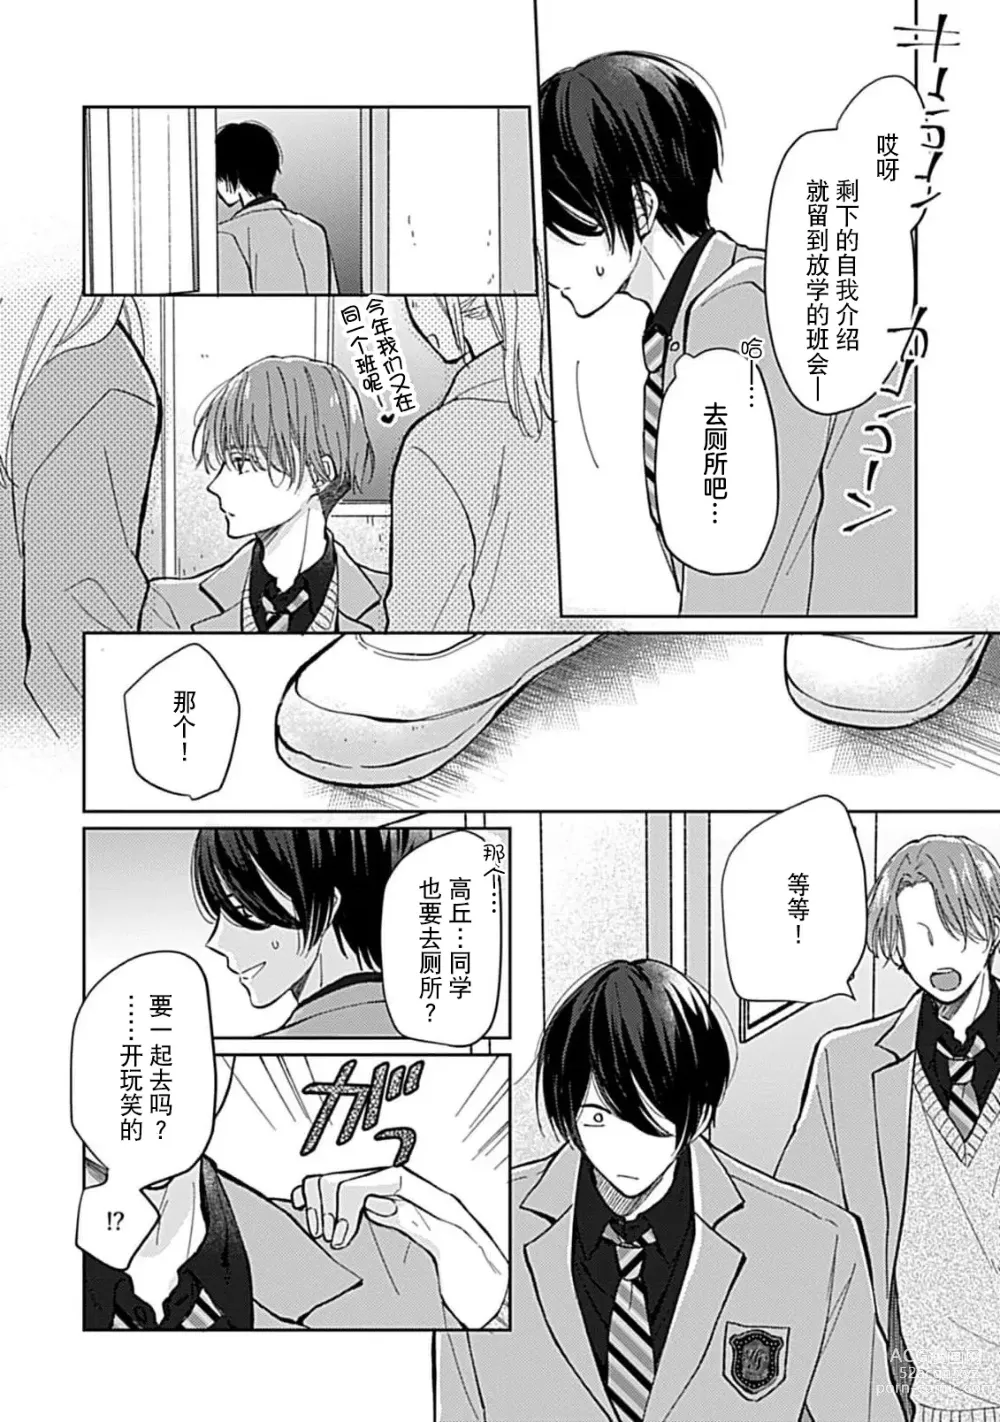 Page 19 of manga 恋情与秘密难以映照 1